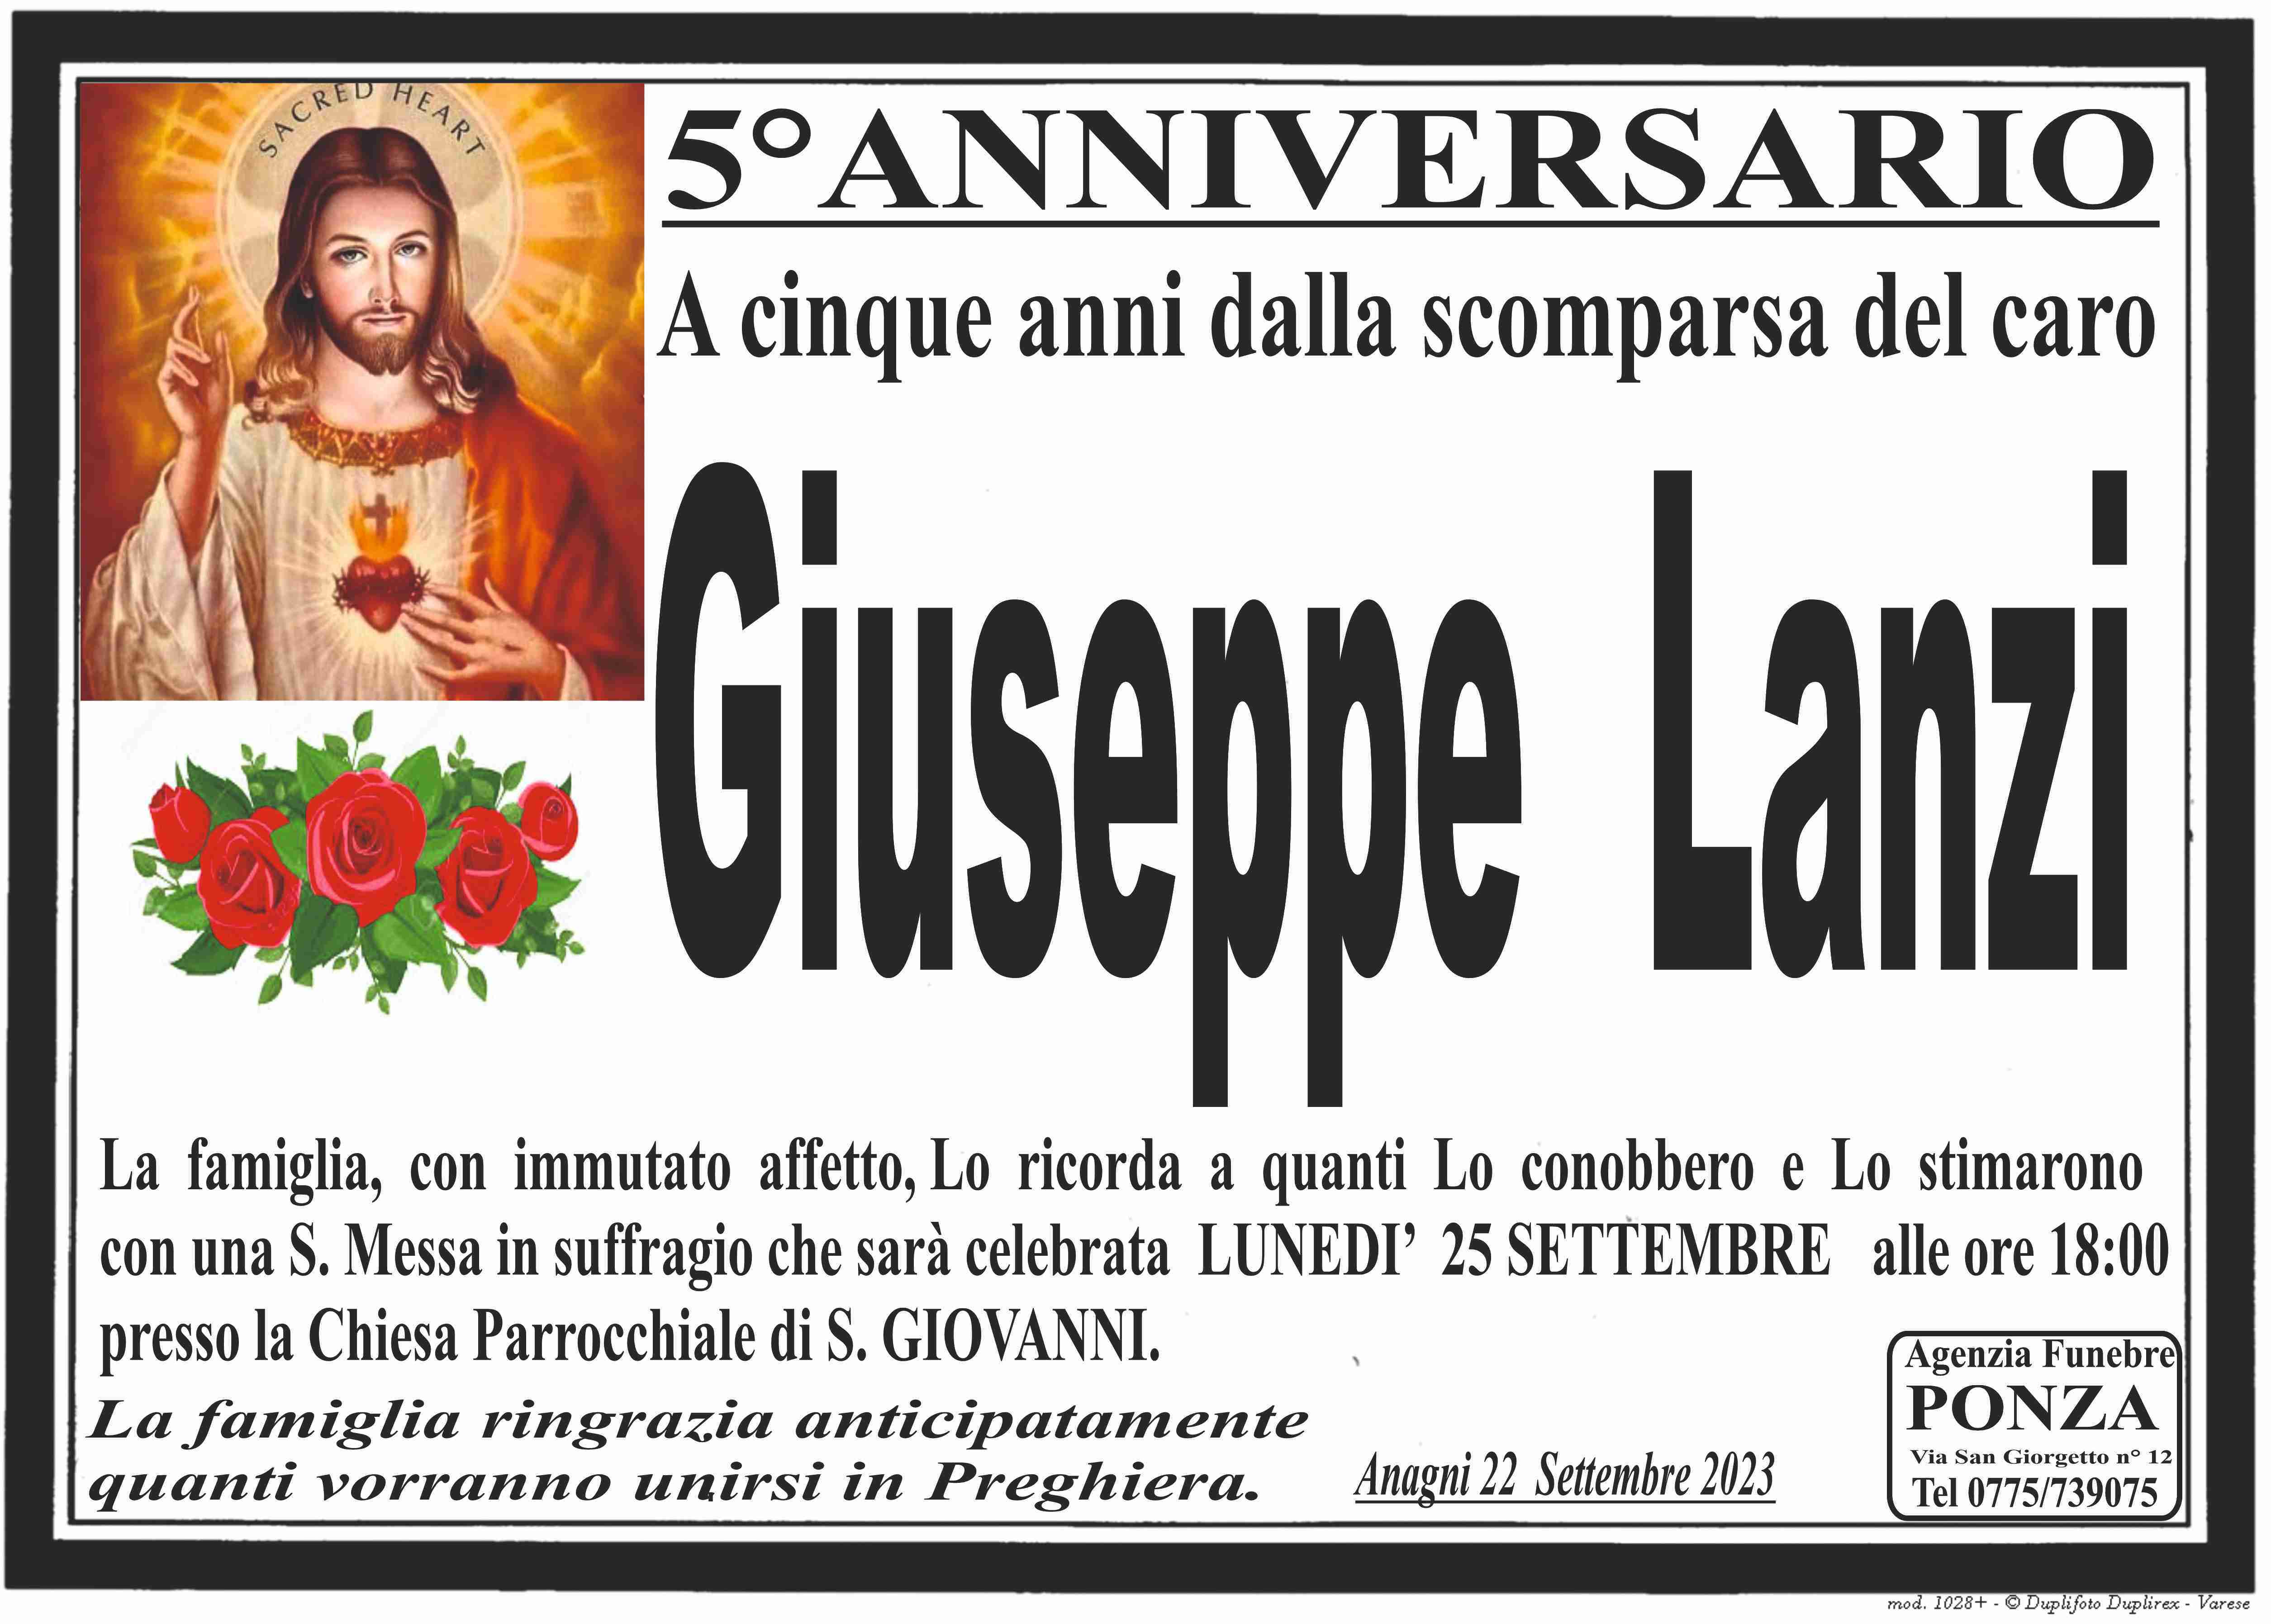 Giuseppe Lanzi